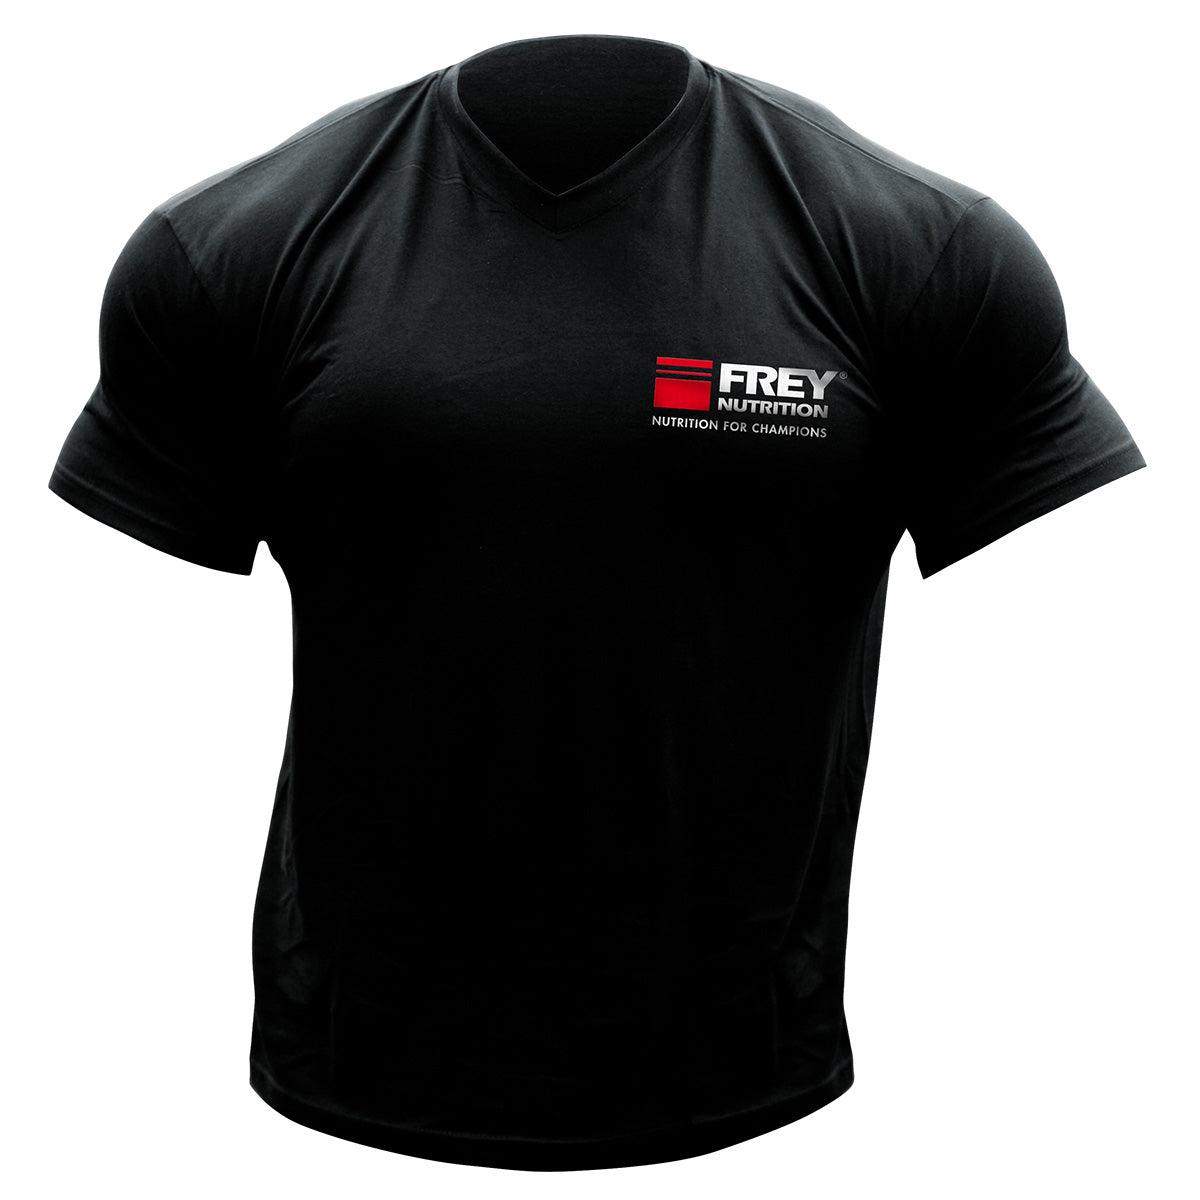 FREY T-SHIRT - Demo-Frey-Nutrition